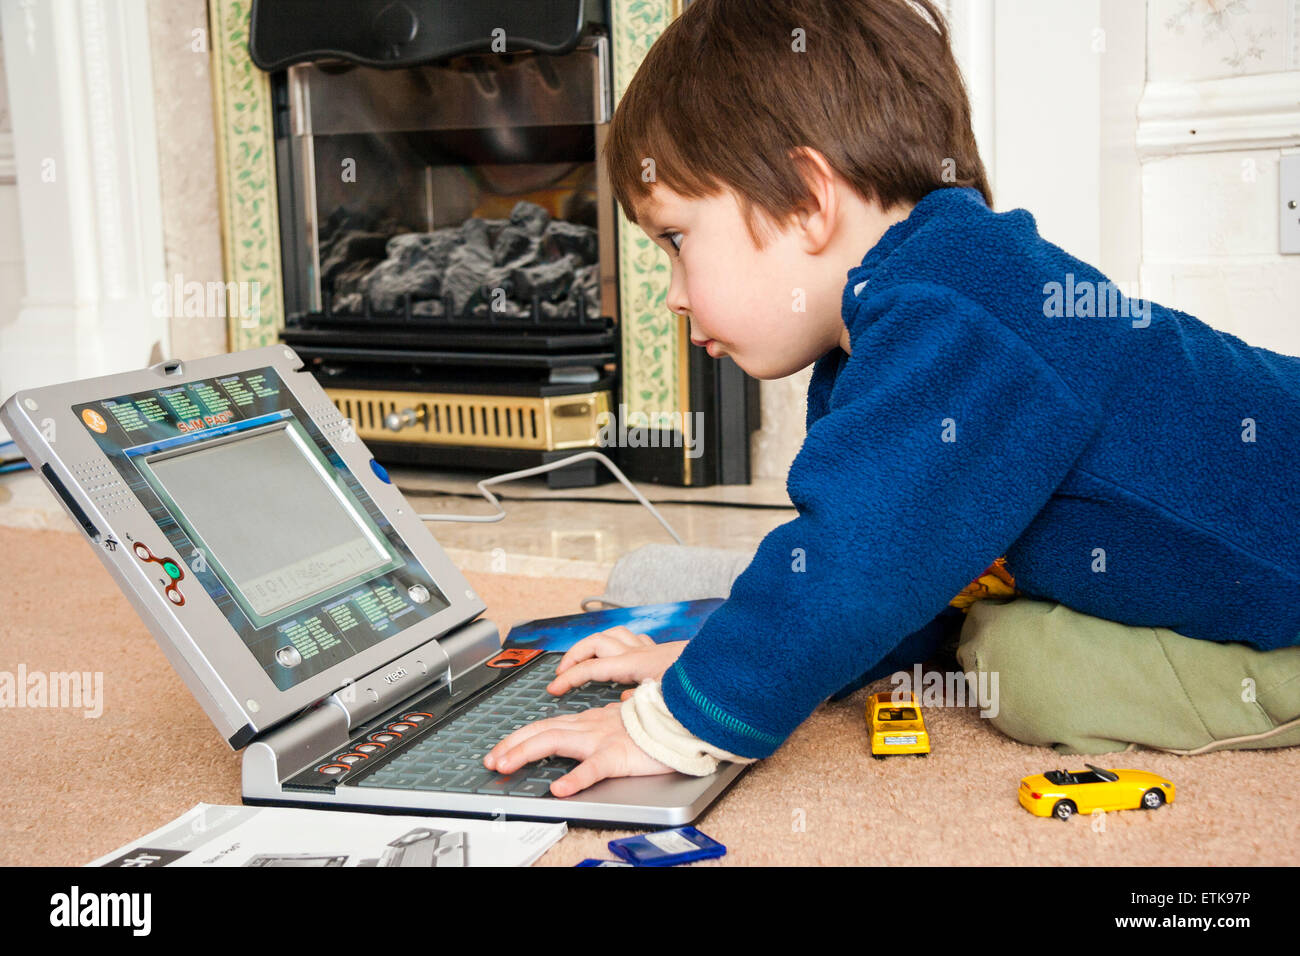 Junges Kind, Junge, 3-4 Jahre alt, drinnen kniend auf Teppich, konzentriert zu Spielen der Kinder mit V-Tech laptop computer, lernen grundlegende computering Fähigkeiten Stockfoto